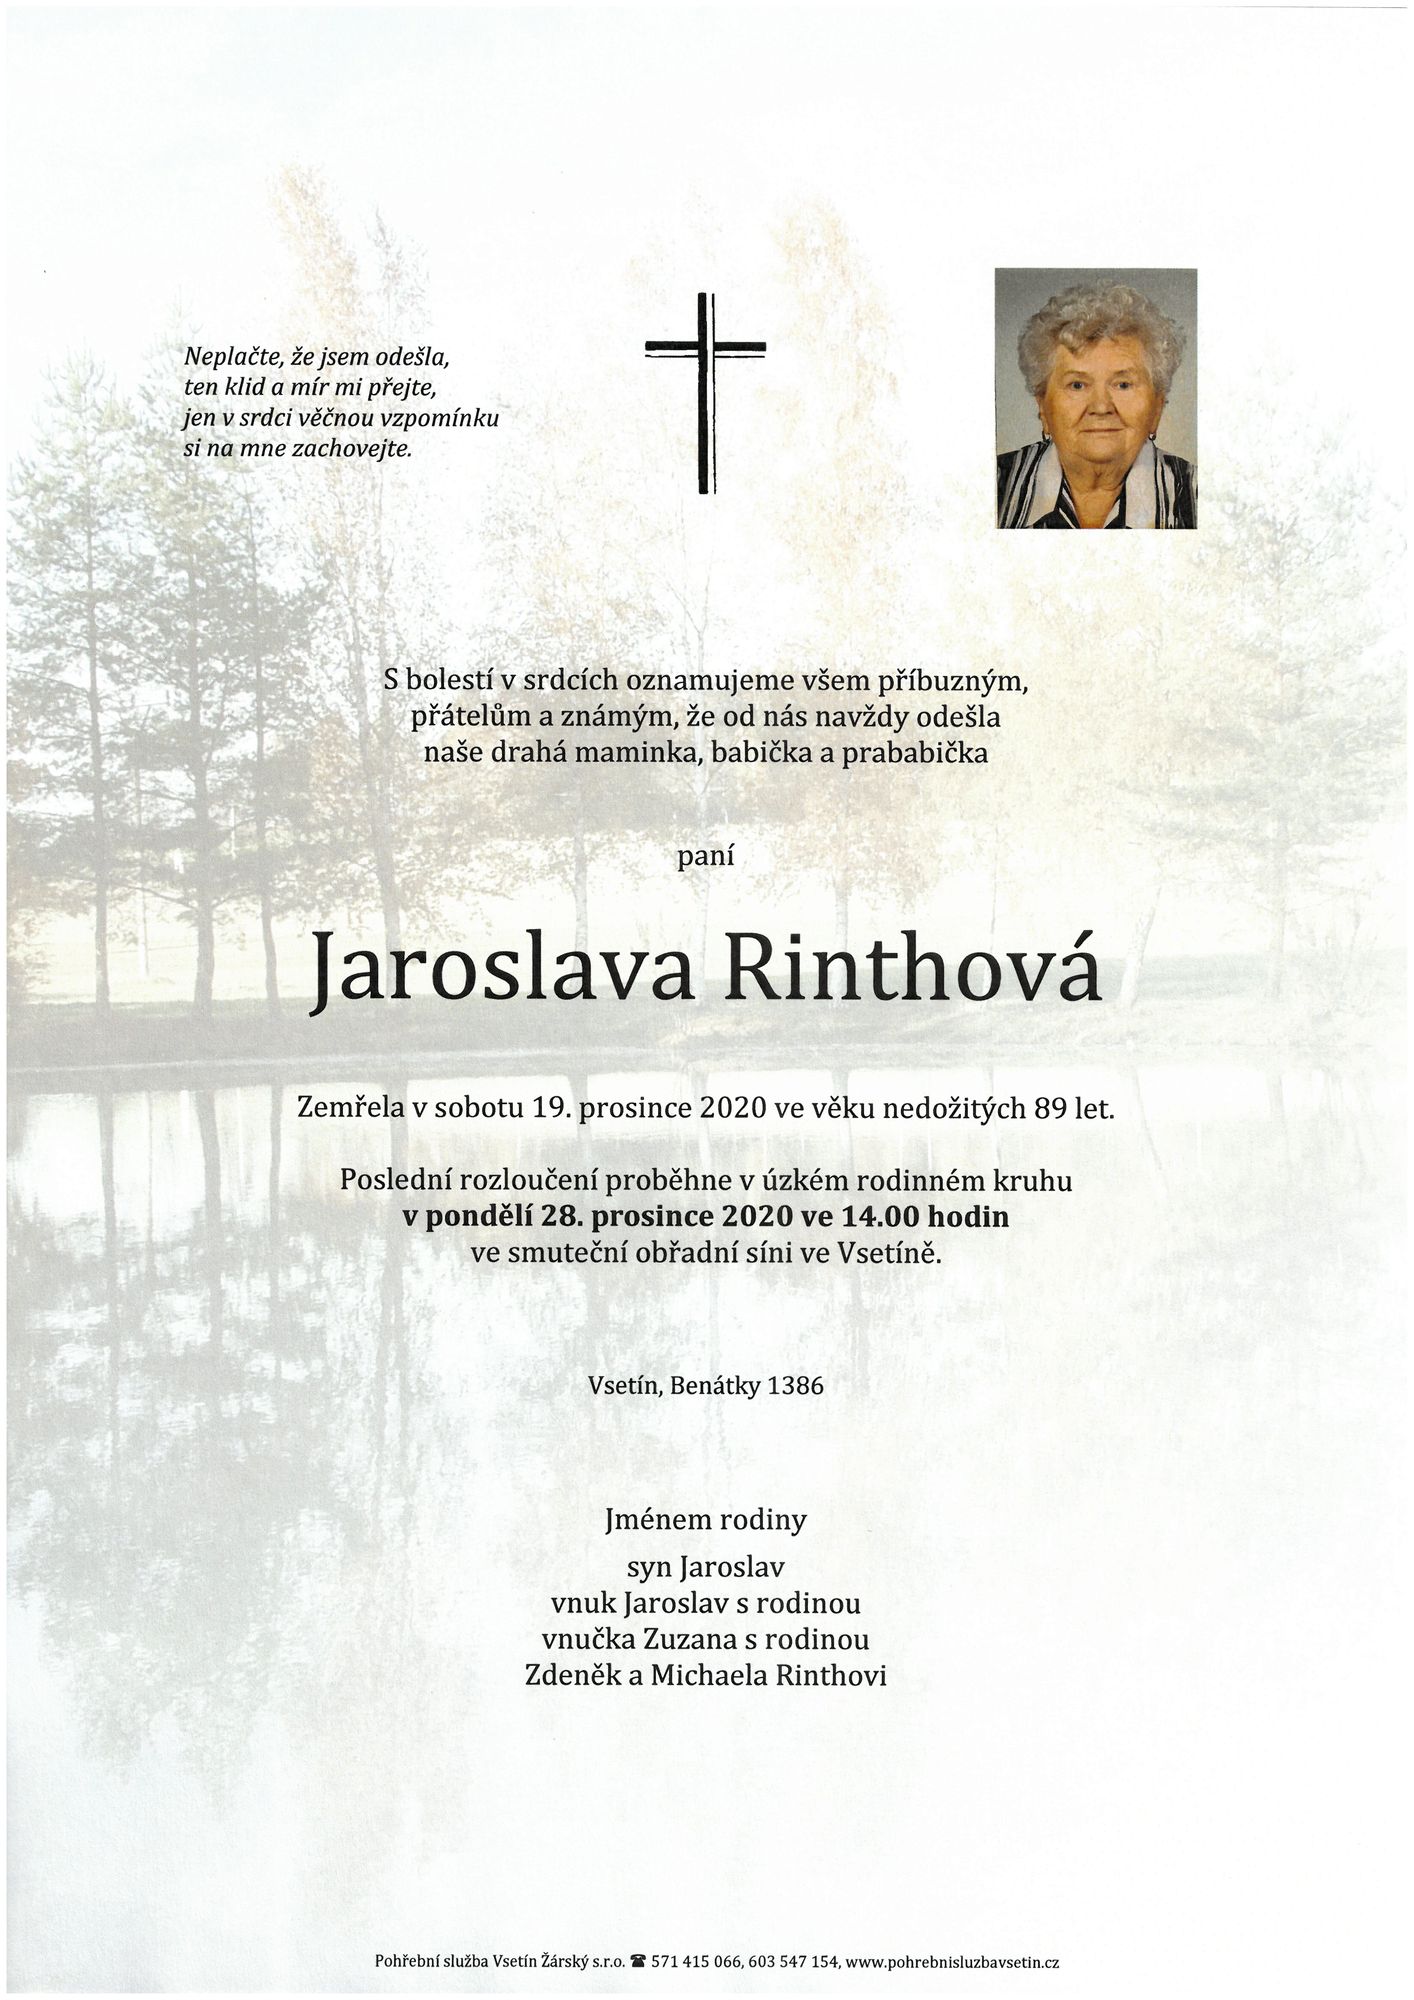 Jaroslava Rinthová